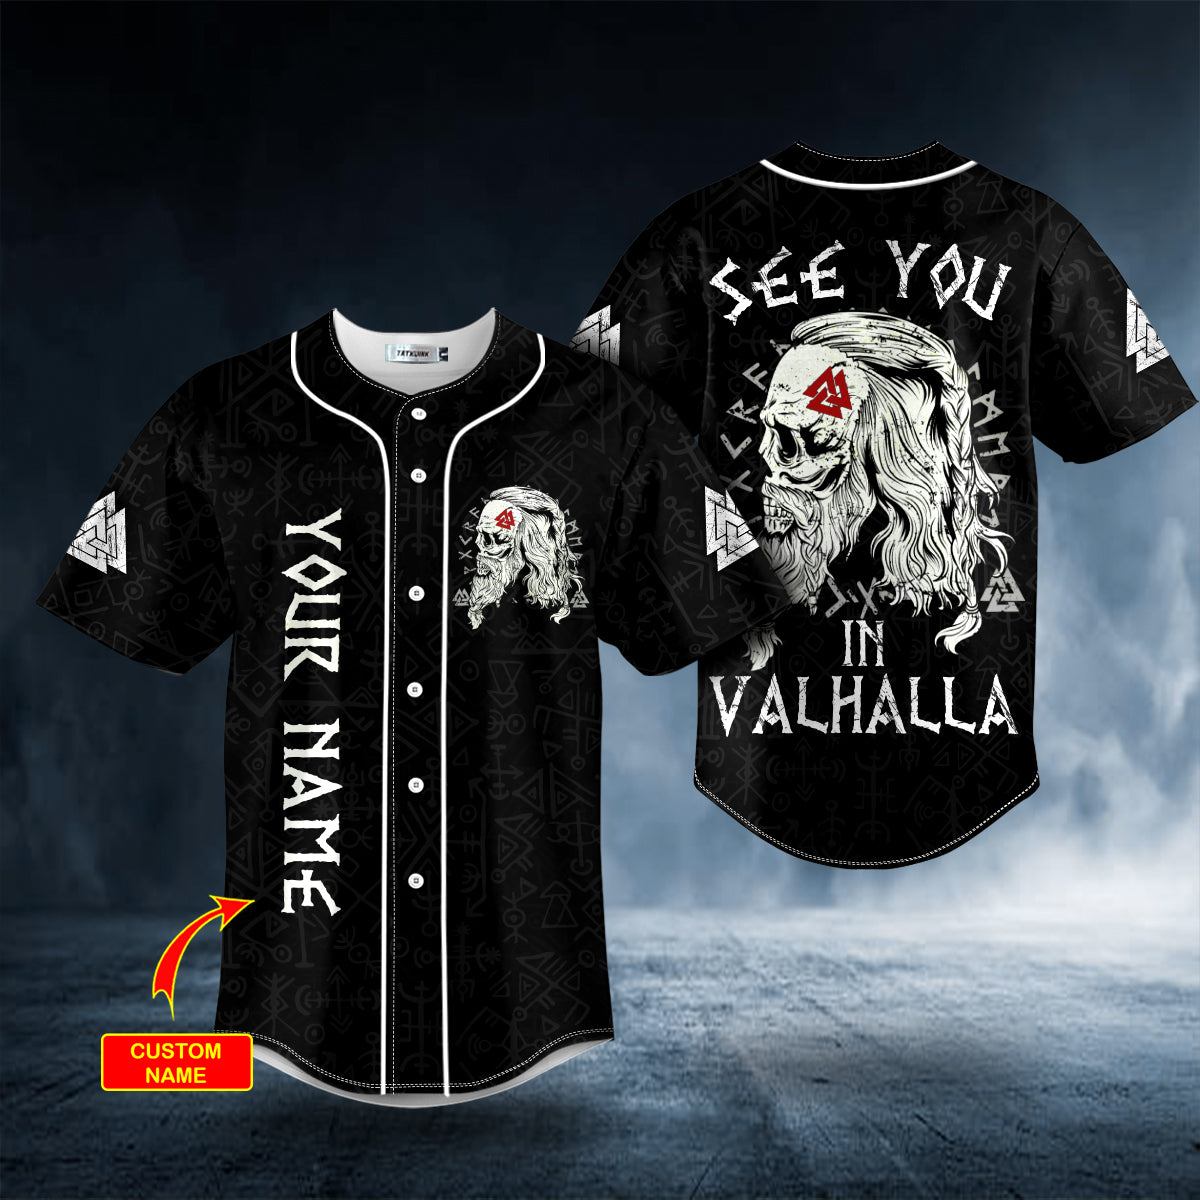 see you in valhalla valknut viking skull custom baseball jersey bsj 884 hsvxe